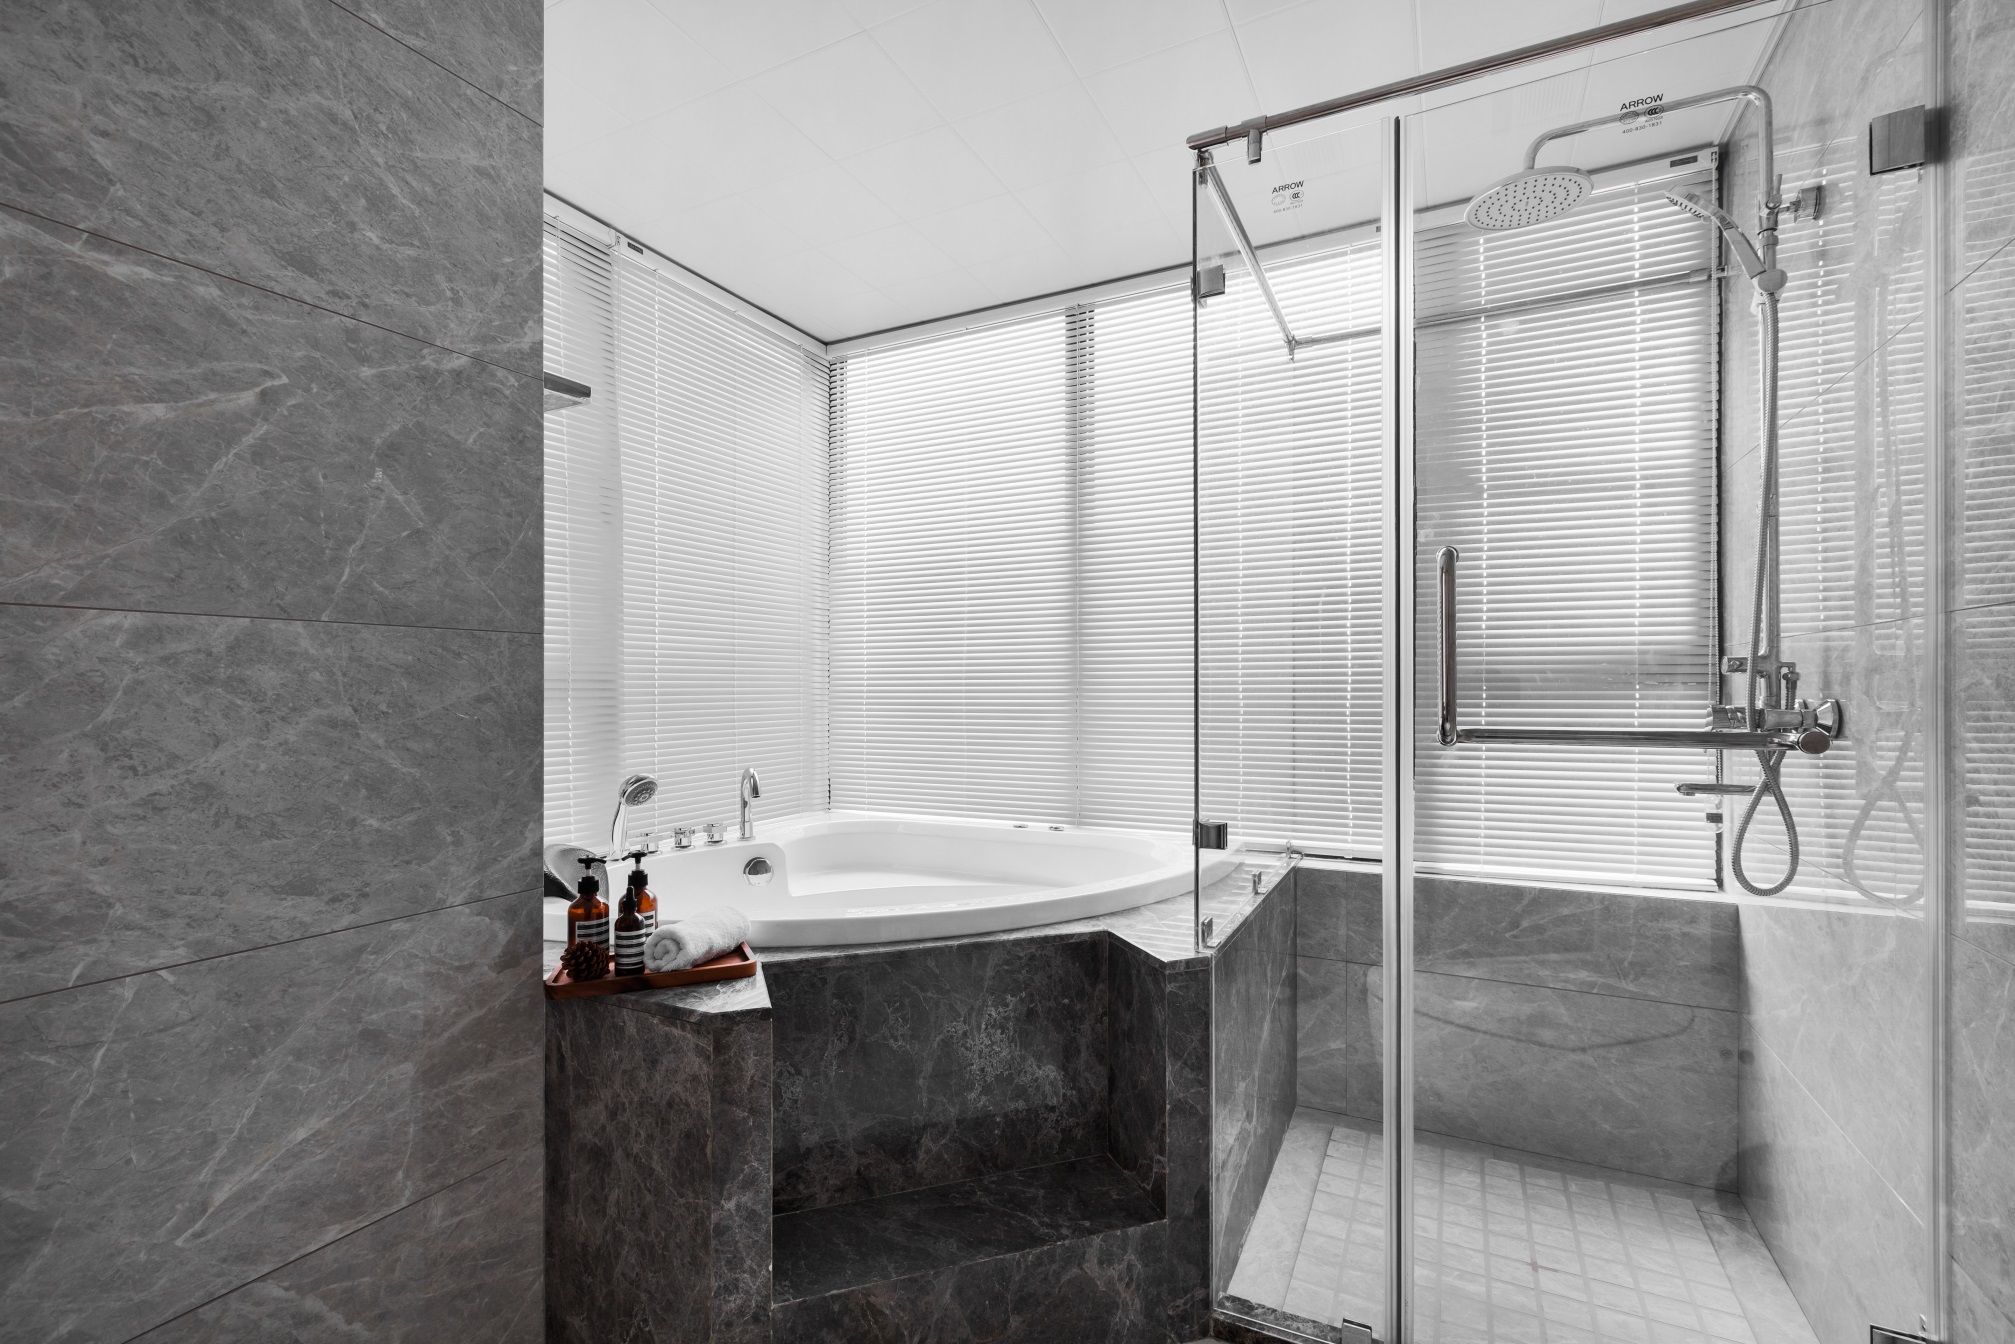 卫浴空间使用大理石渲染氛围，浴缸设计富有设计感和高端感，营造出理性优雅的生活情趣。